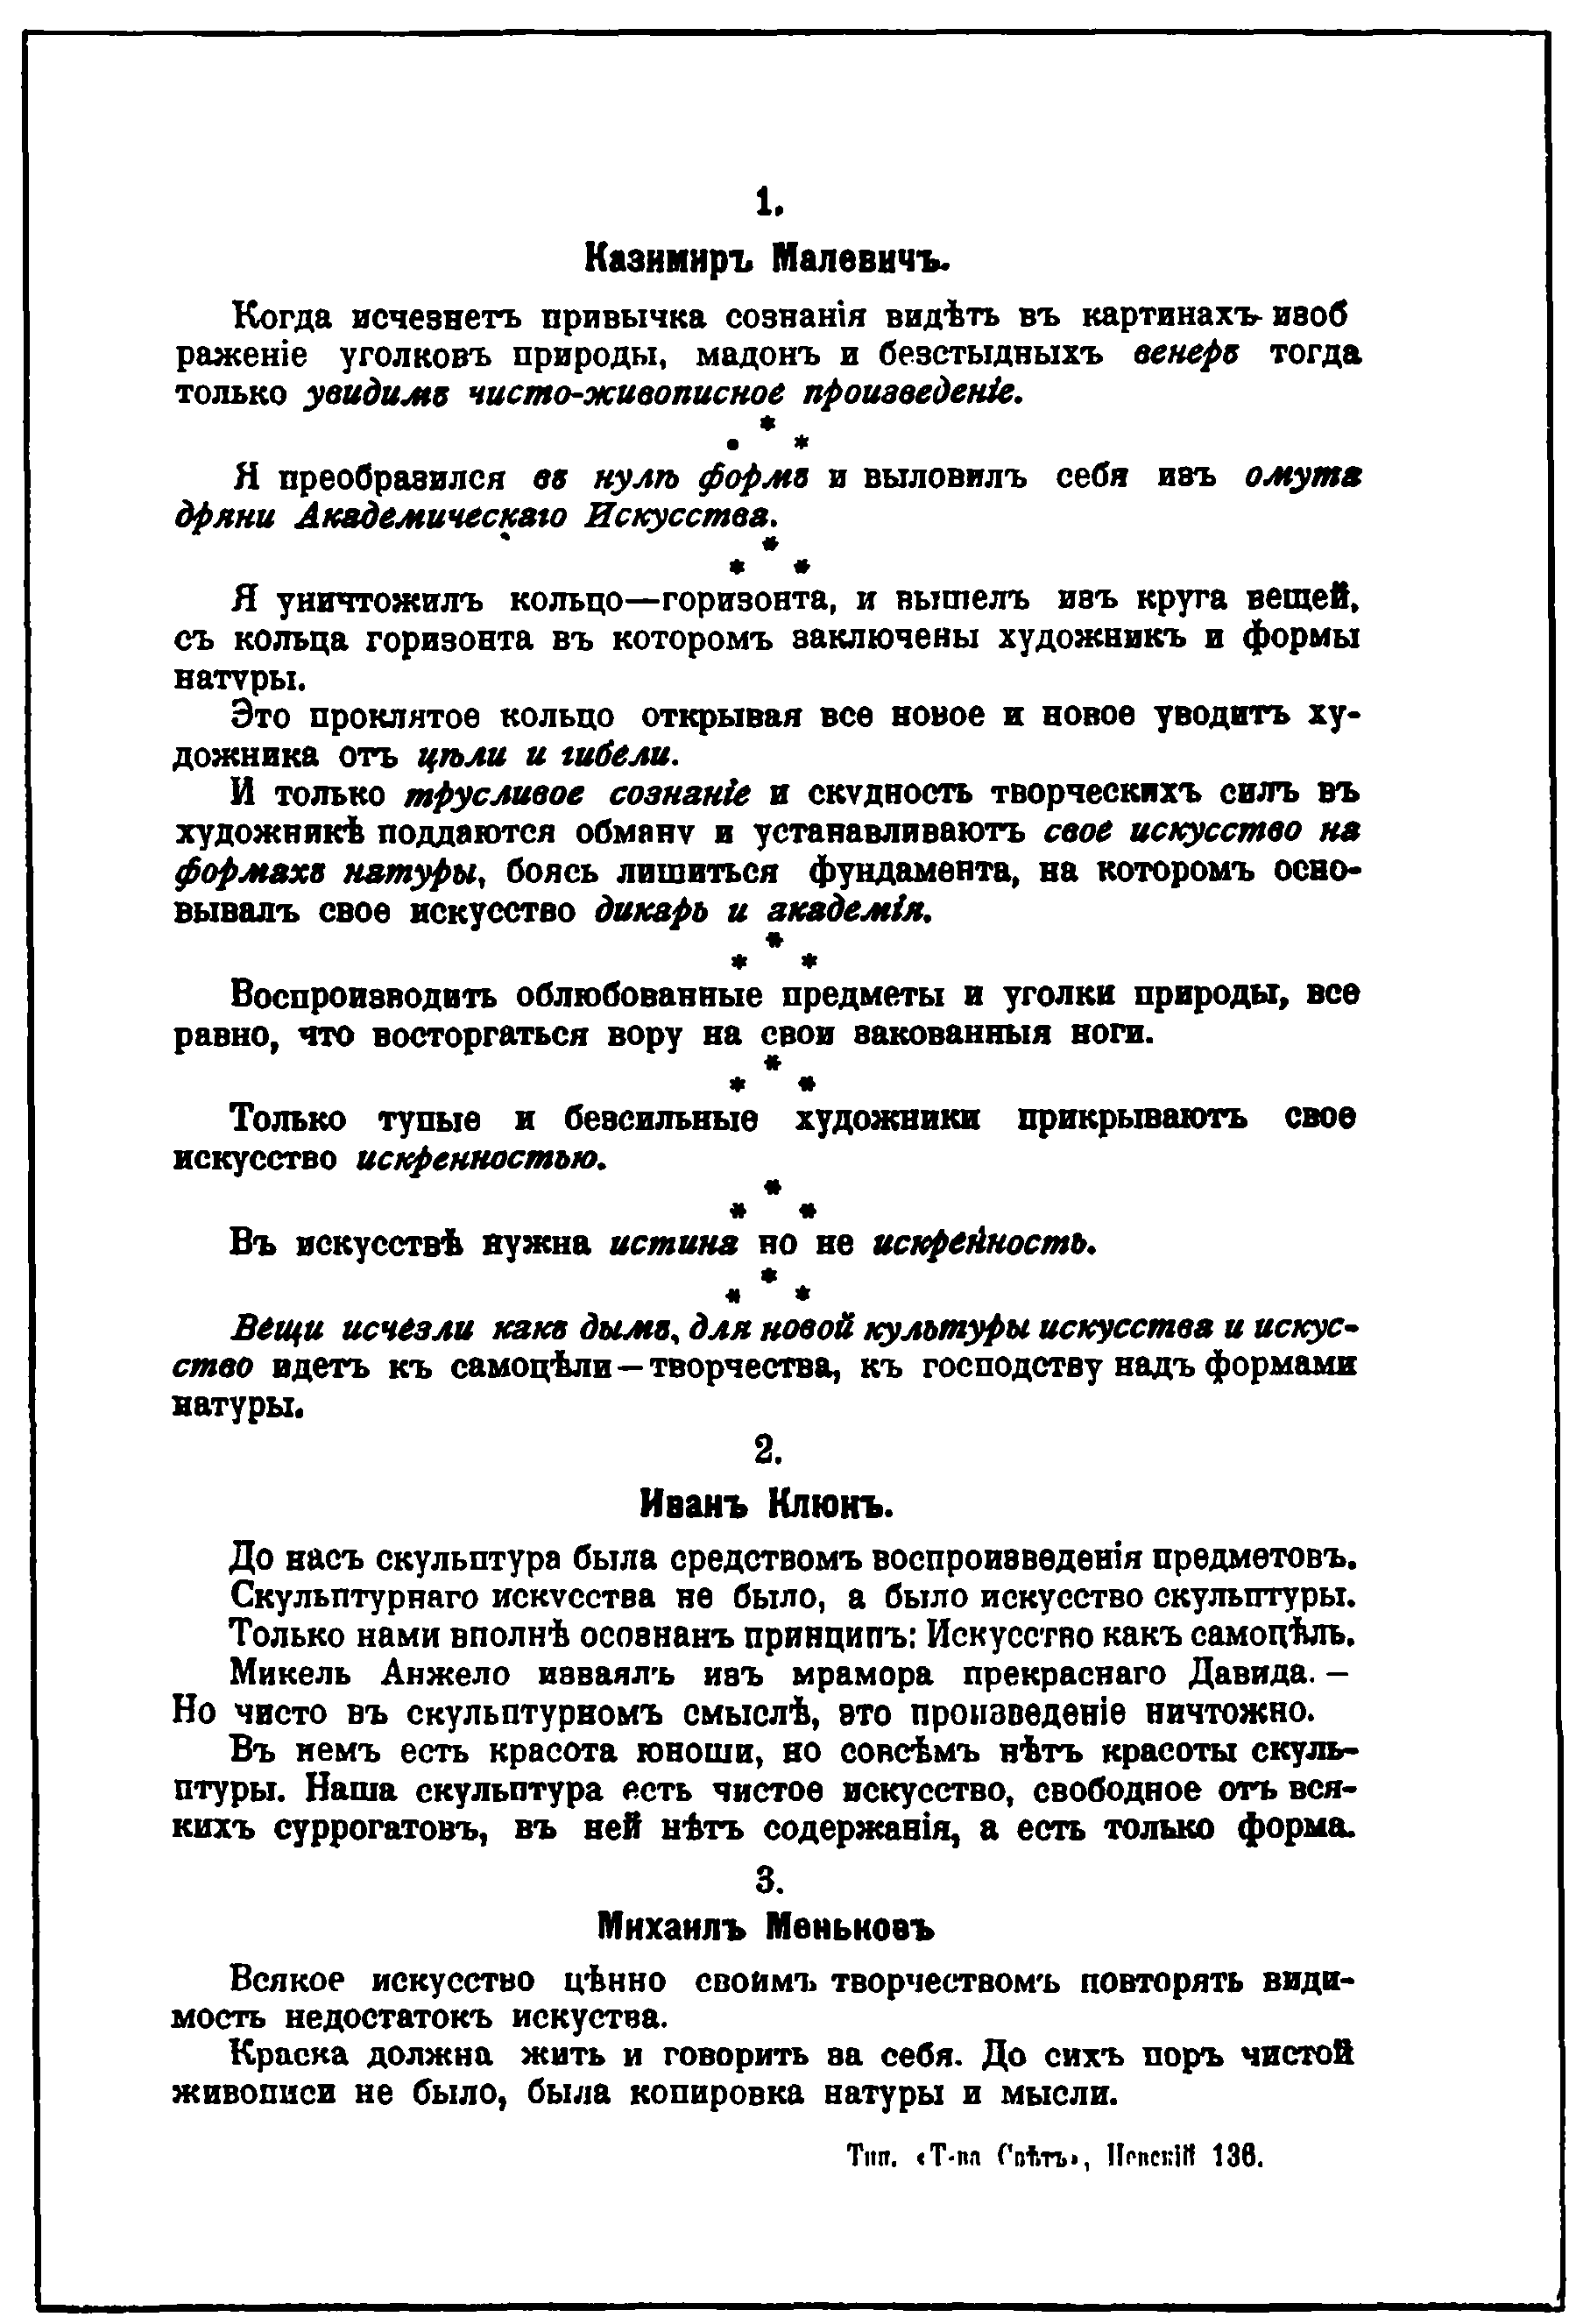 Листовка, распространявшаяся на «Последней футуристической выставке картин 0,10 (ноль-десять)». Петроград, 1915 год